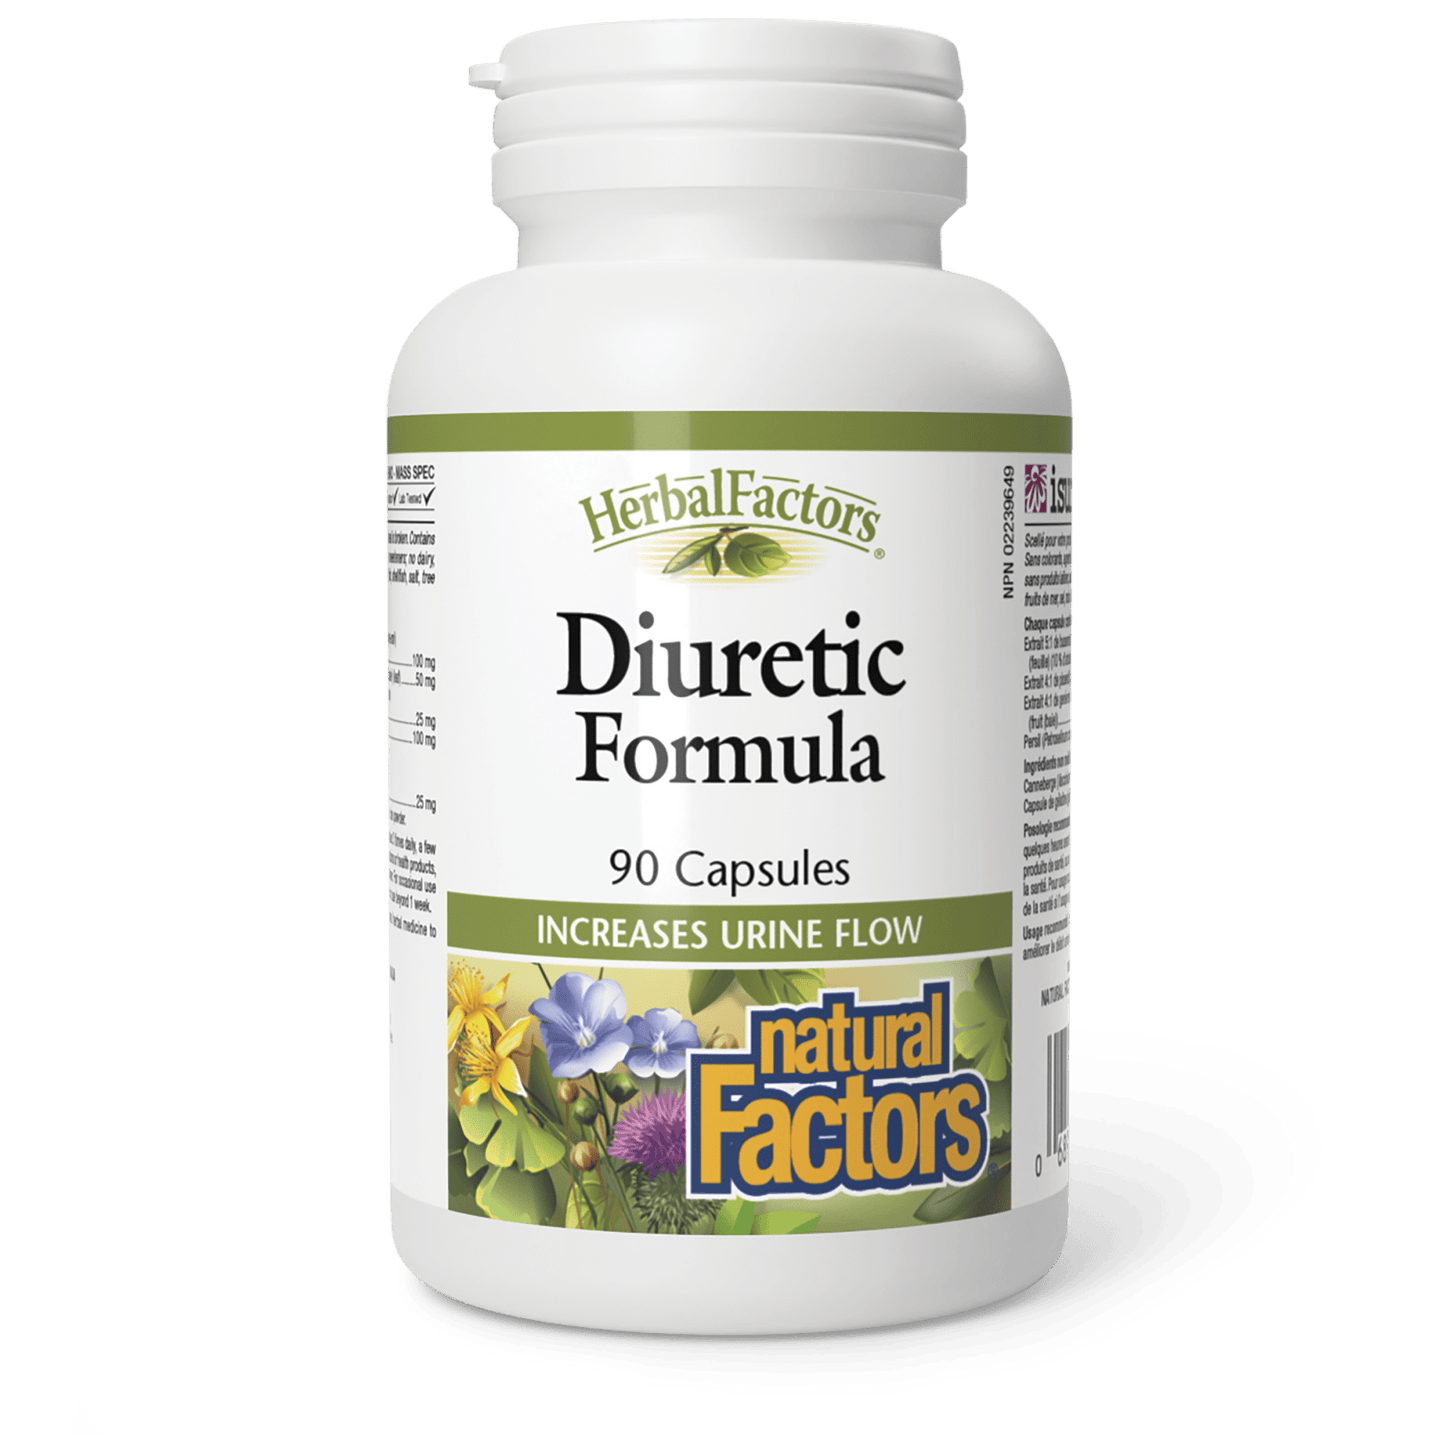 Diuretic Formula, HerbalFactors, Natural Factors|v|image|4630